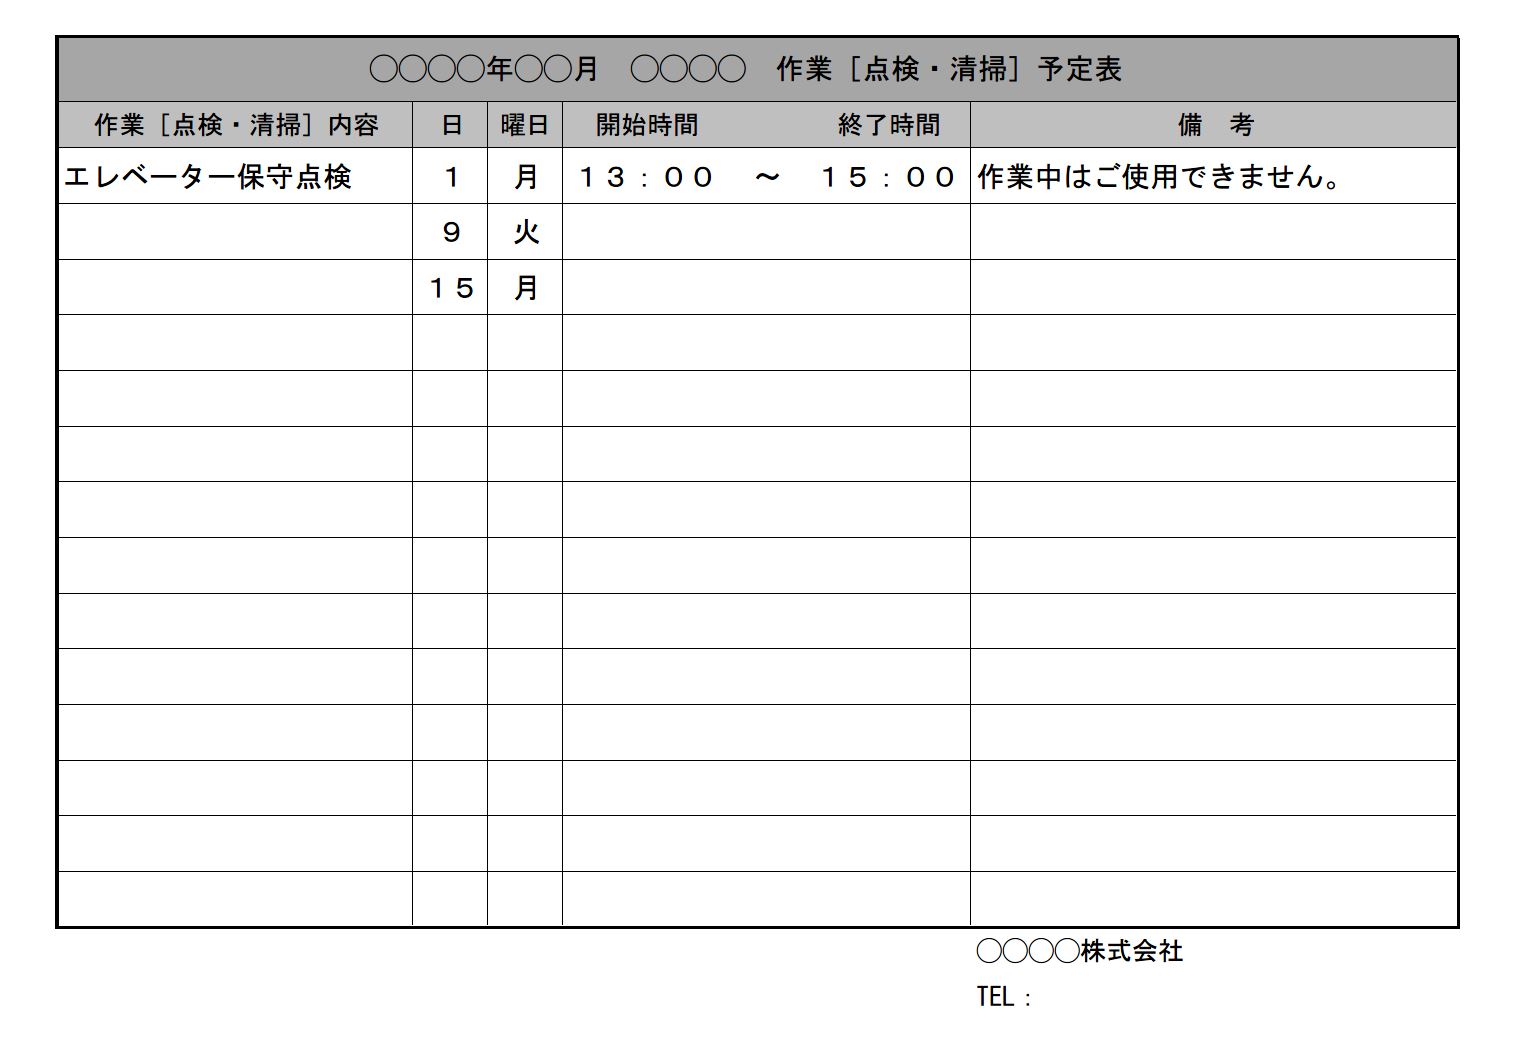 年間スケジュール表 スケジュール管理表 カレンダー 予定表 書式 様式 フォーマット 雛形 ひな形 テンプレート 無料 ダウンロード 03 万年 365日日付入り 版 エクセル Excel 文書 テンプレートの無料ダウンロード